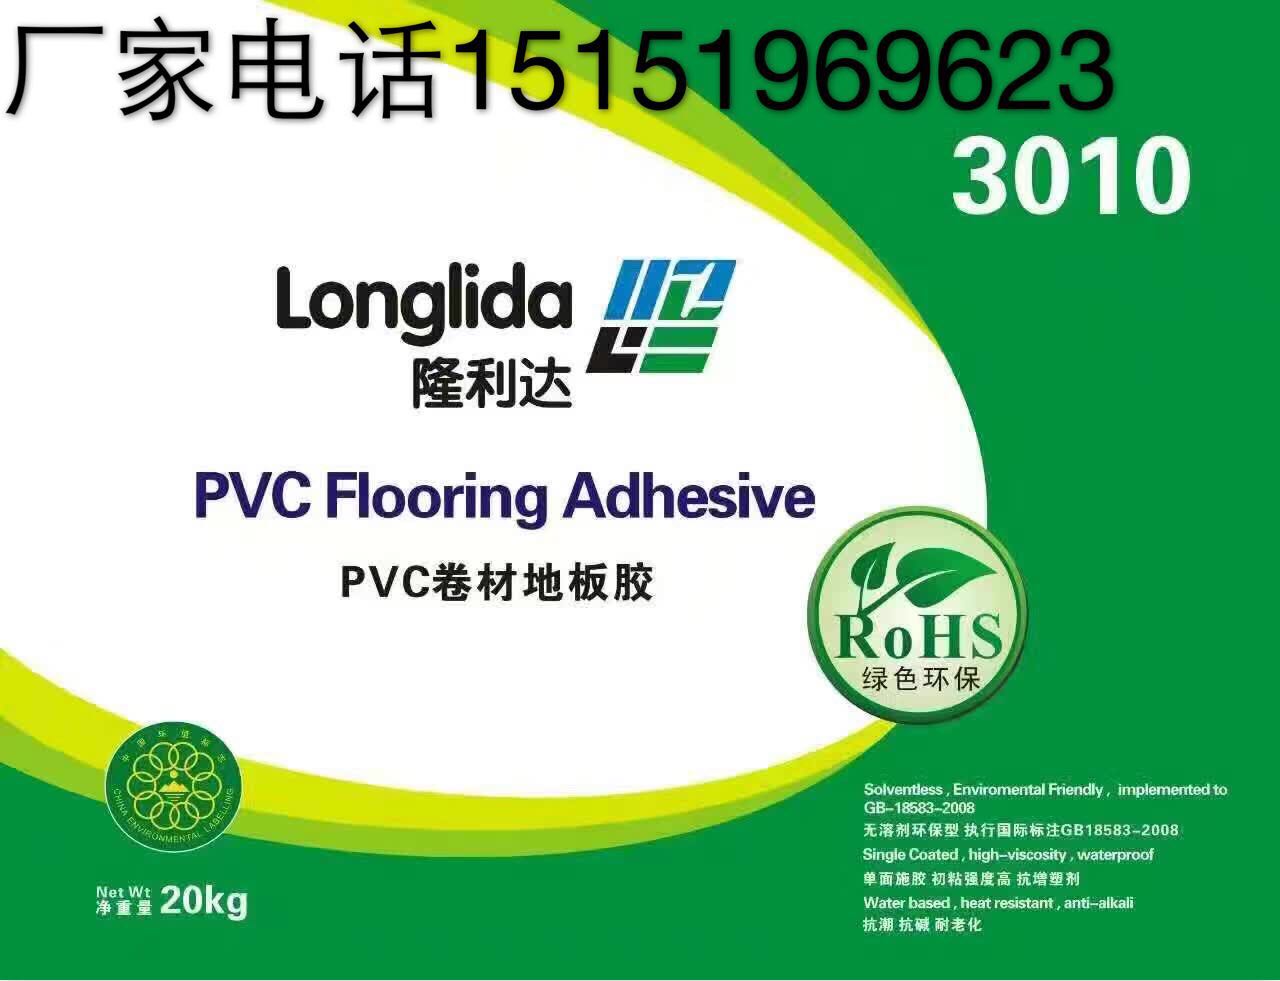 隆利达pvc地板胶水，3010卷材型地板胶水，强度高，粘接力强。